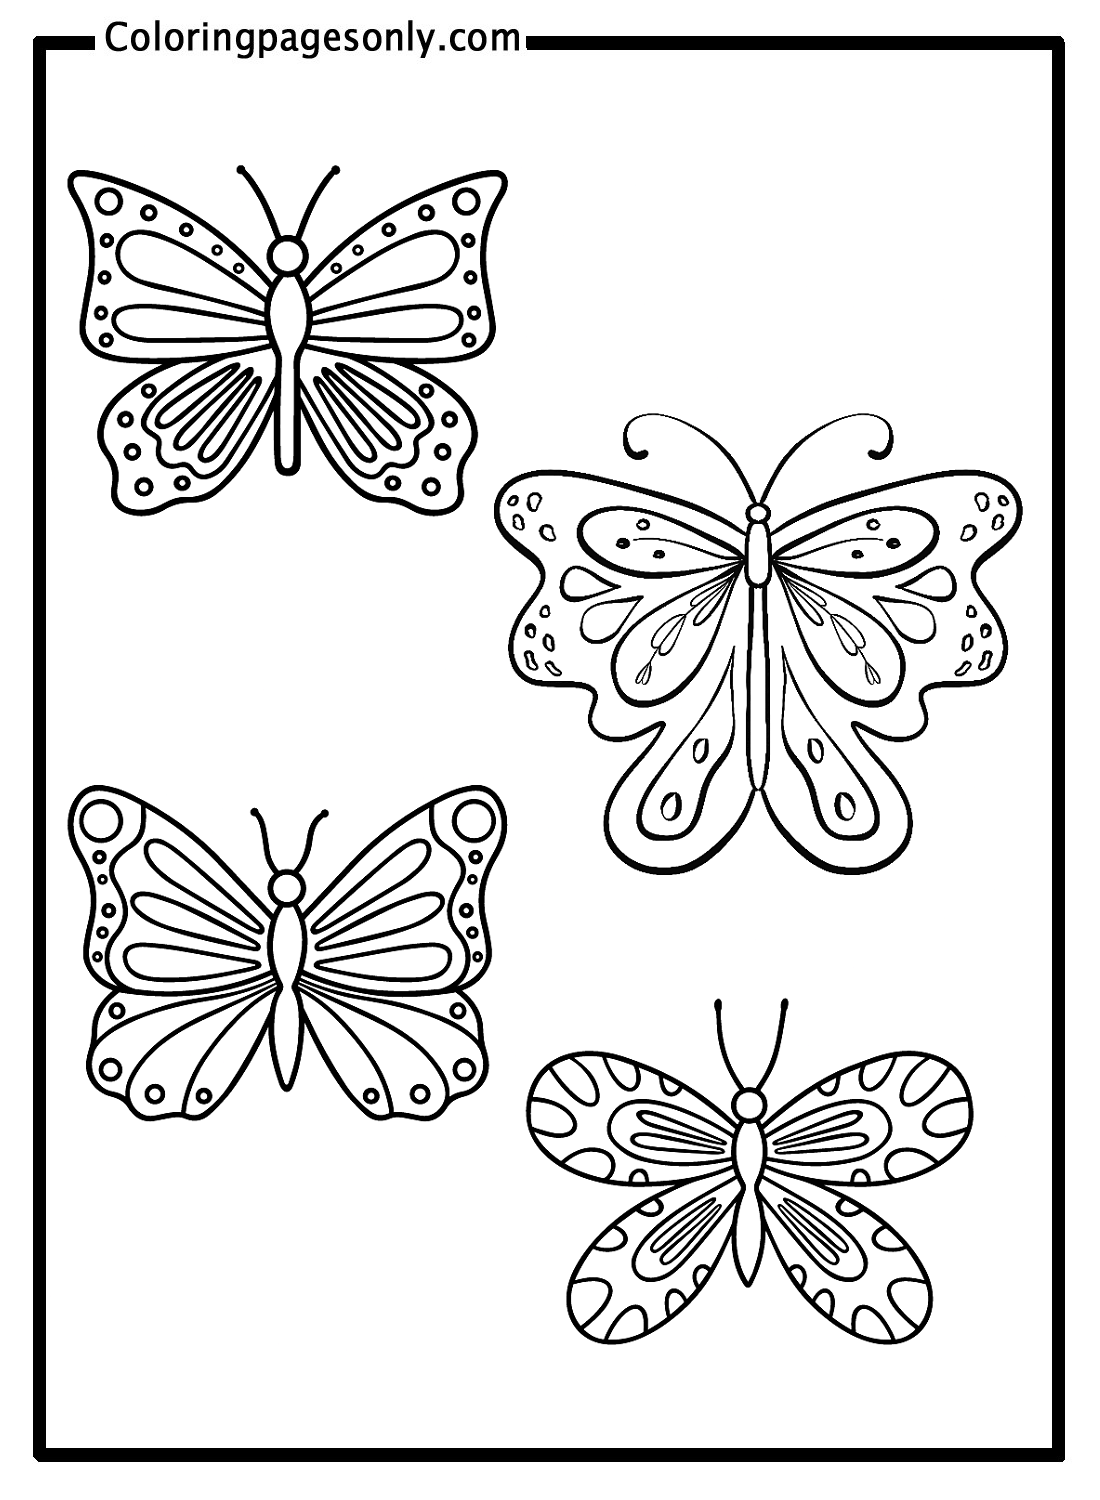 《蝴蝶》中的四只蝴蝶